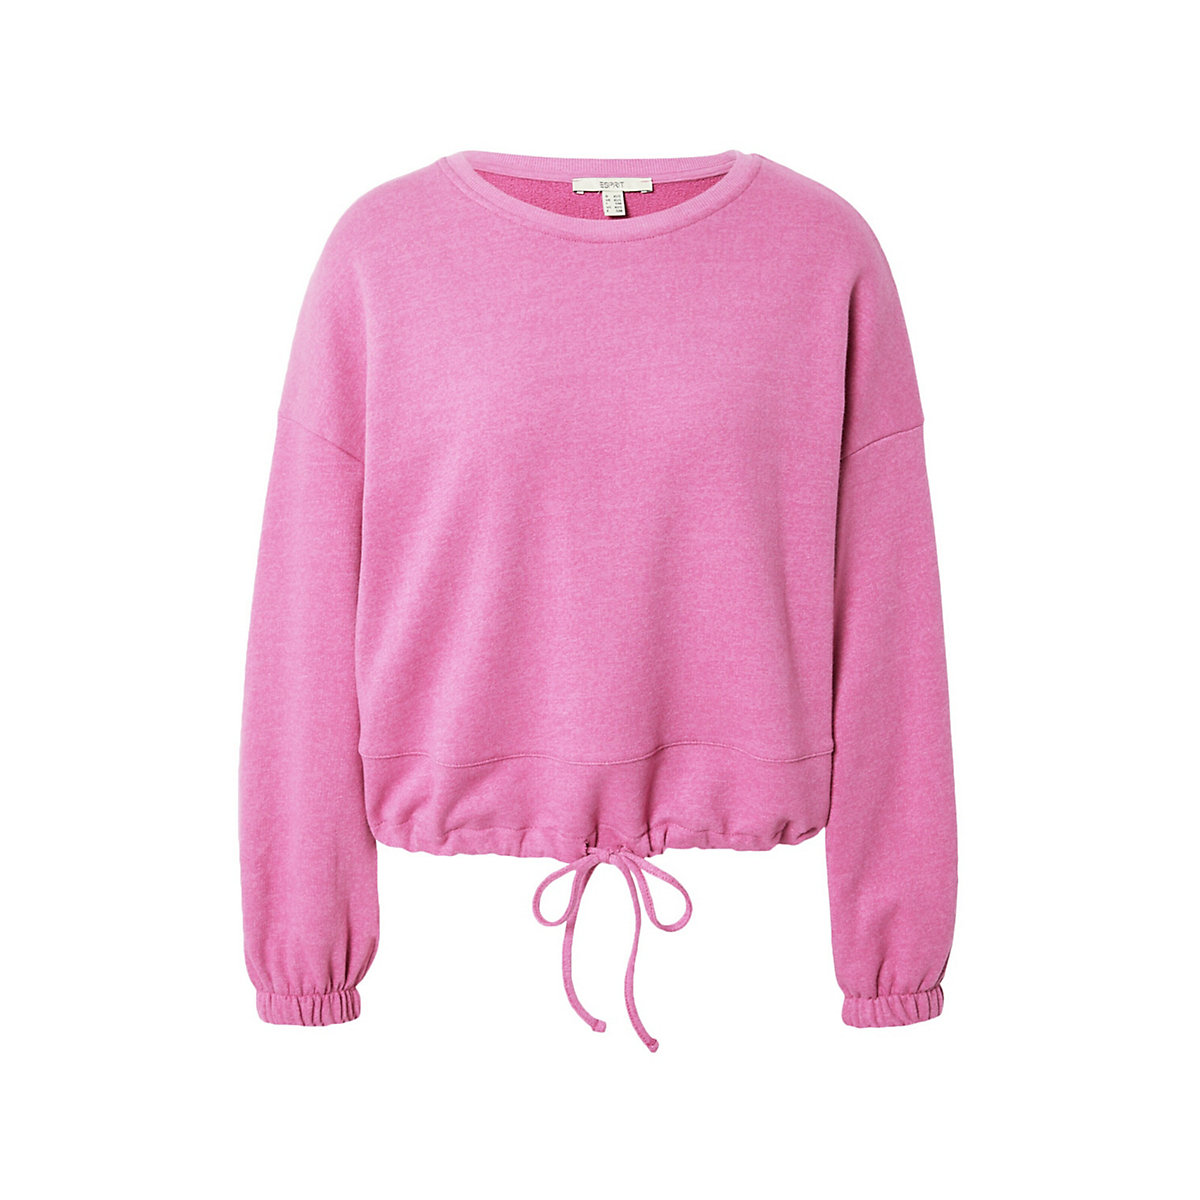 ESPRIT sweatshirt pink